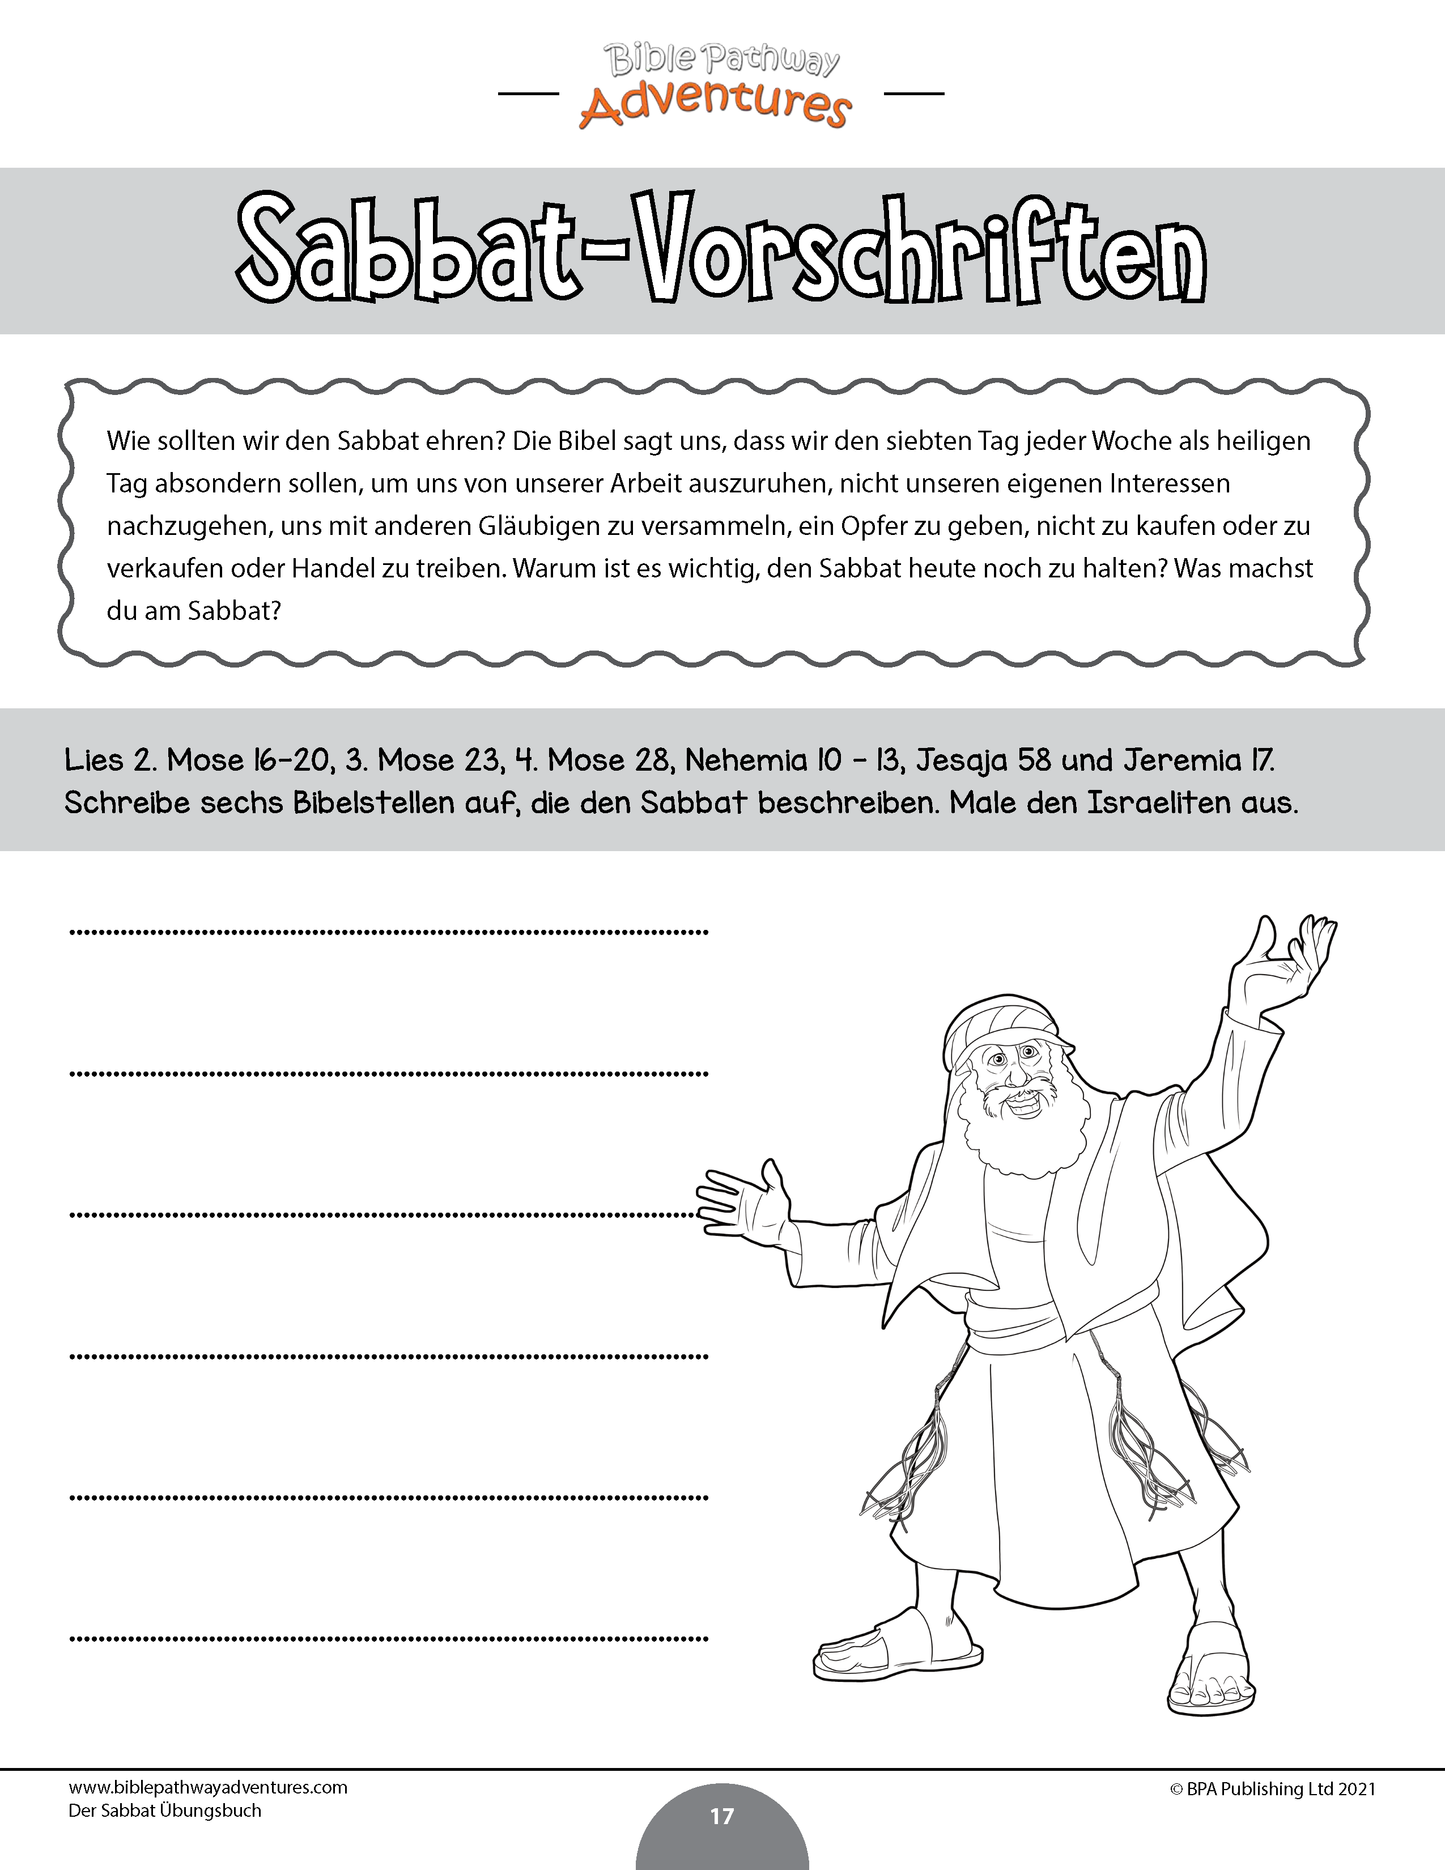 Der Sabbat Übungsbuch (PDF)